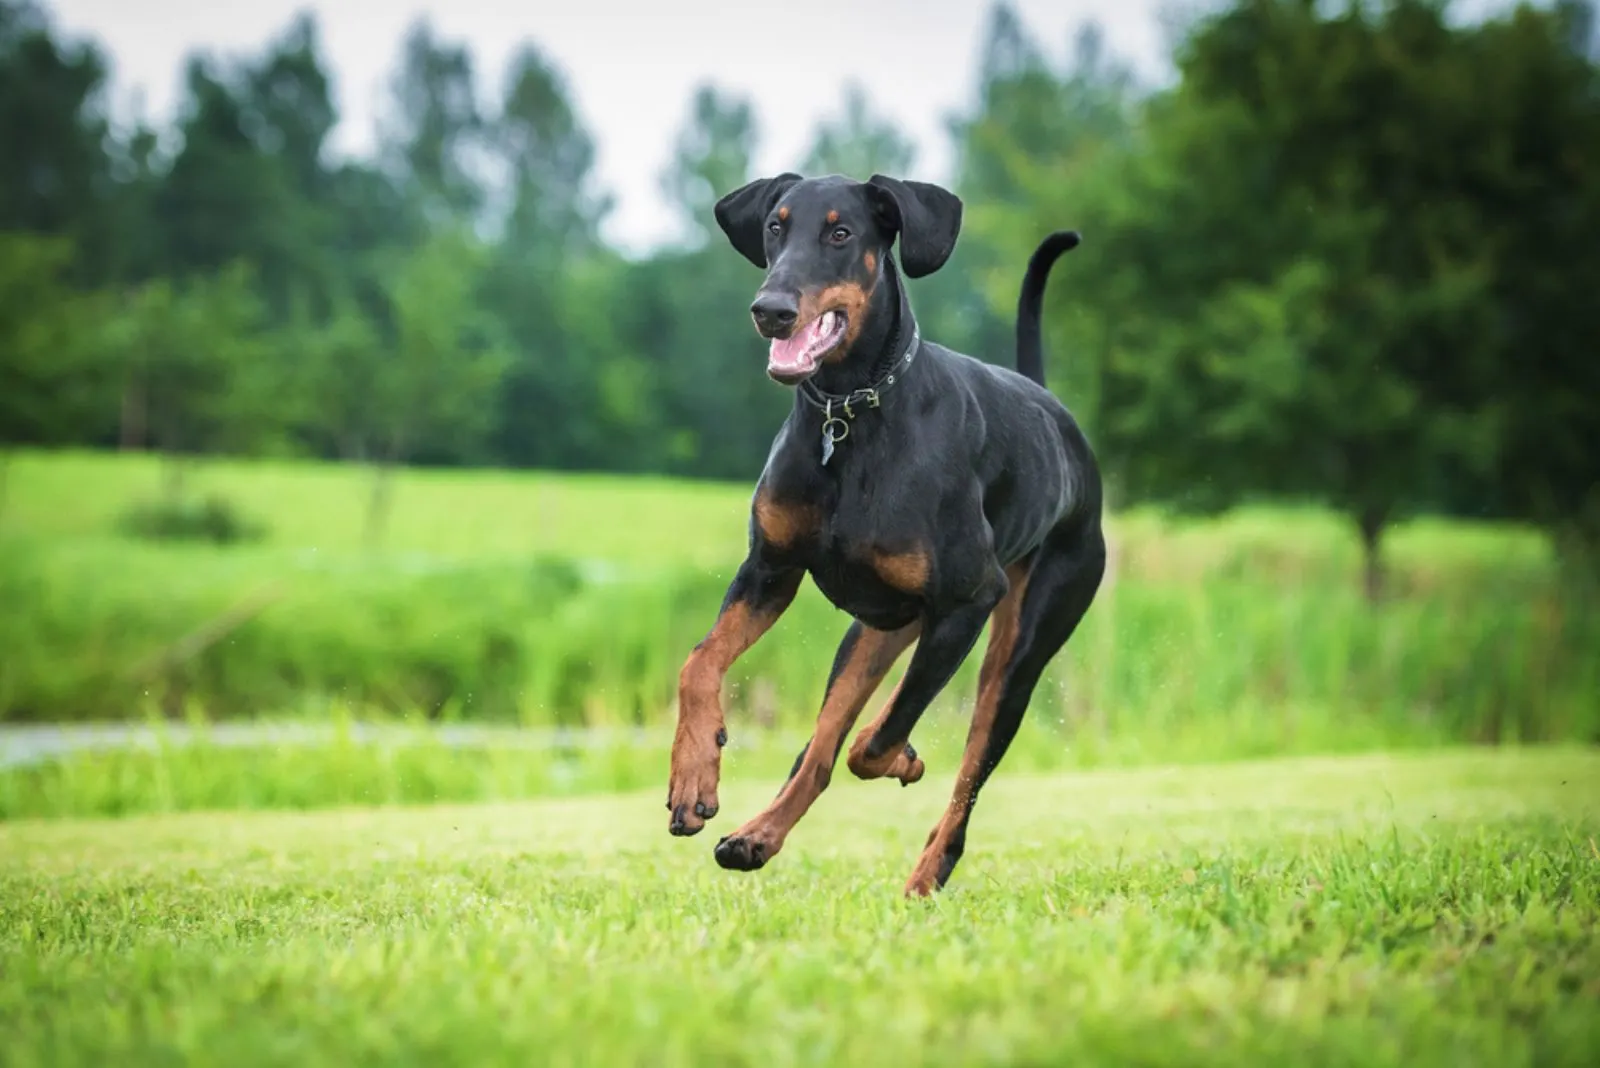 Doberman pinscher dog running